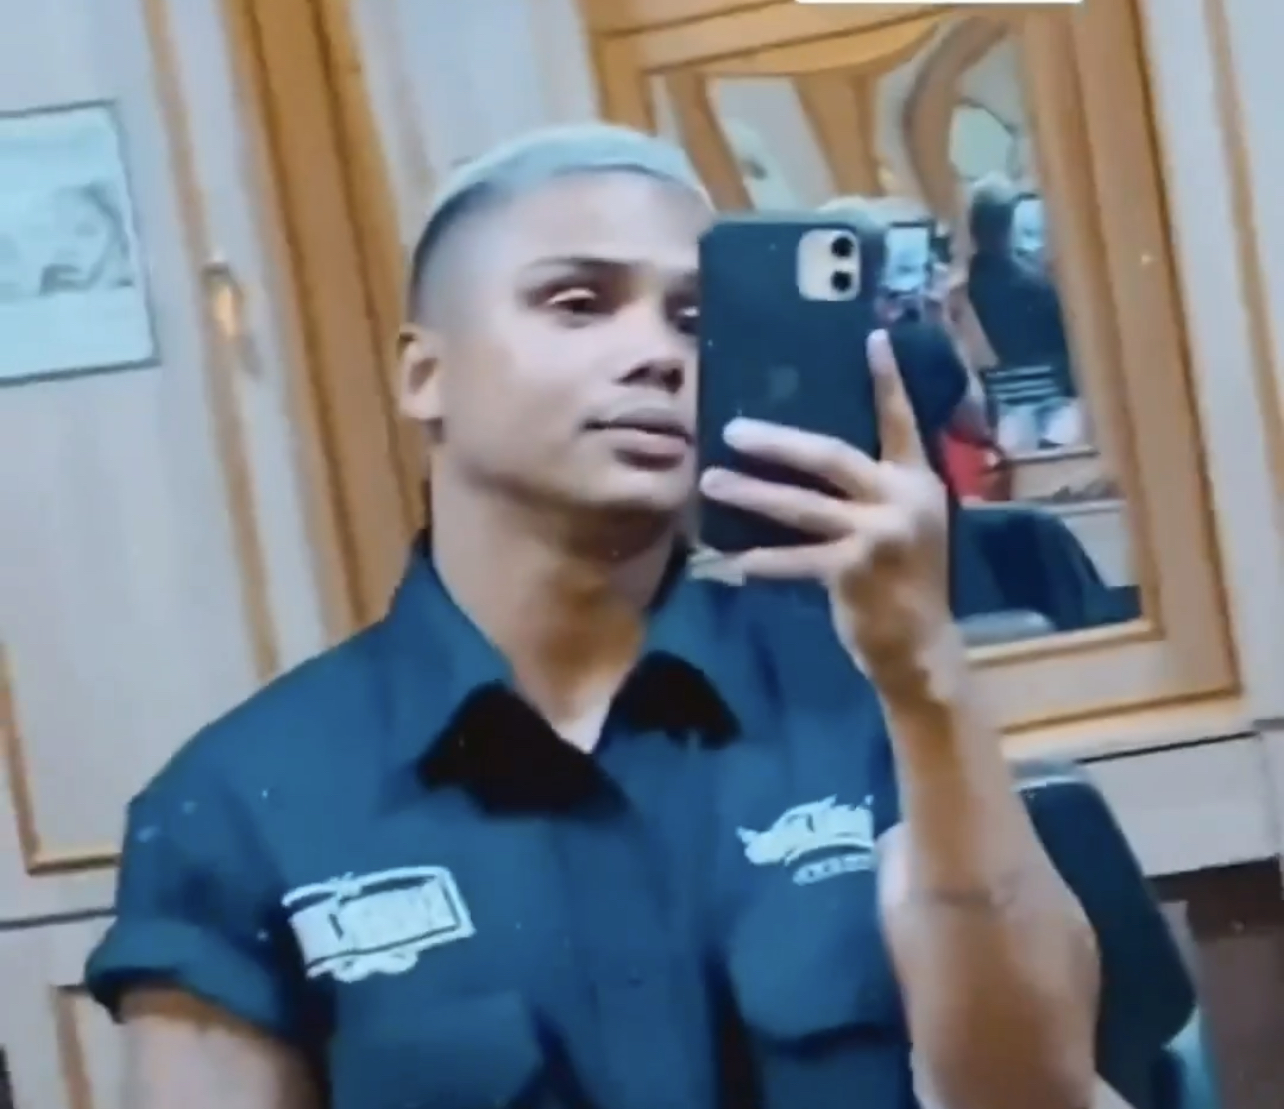 Un peluquero de Brasil agredía a hombres gays y lo subía a redes sociales